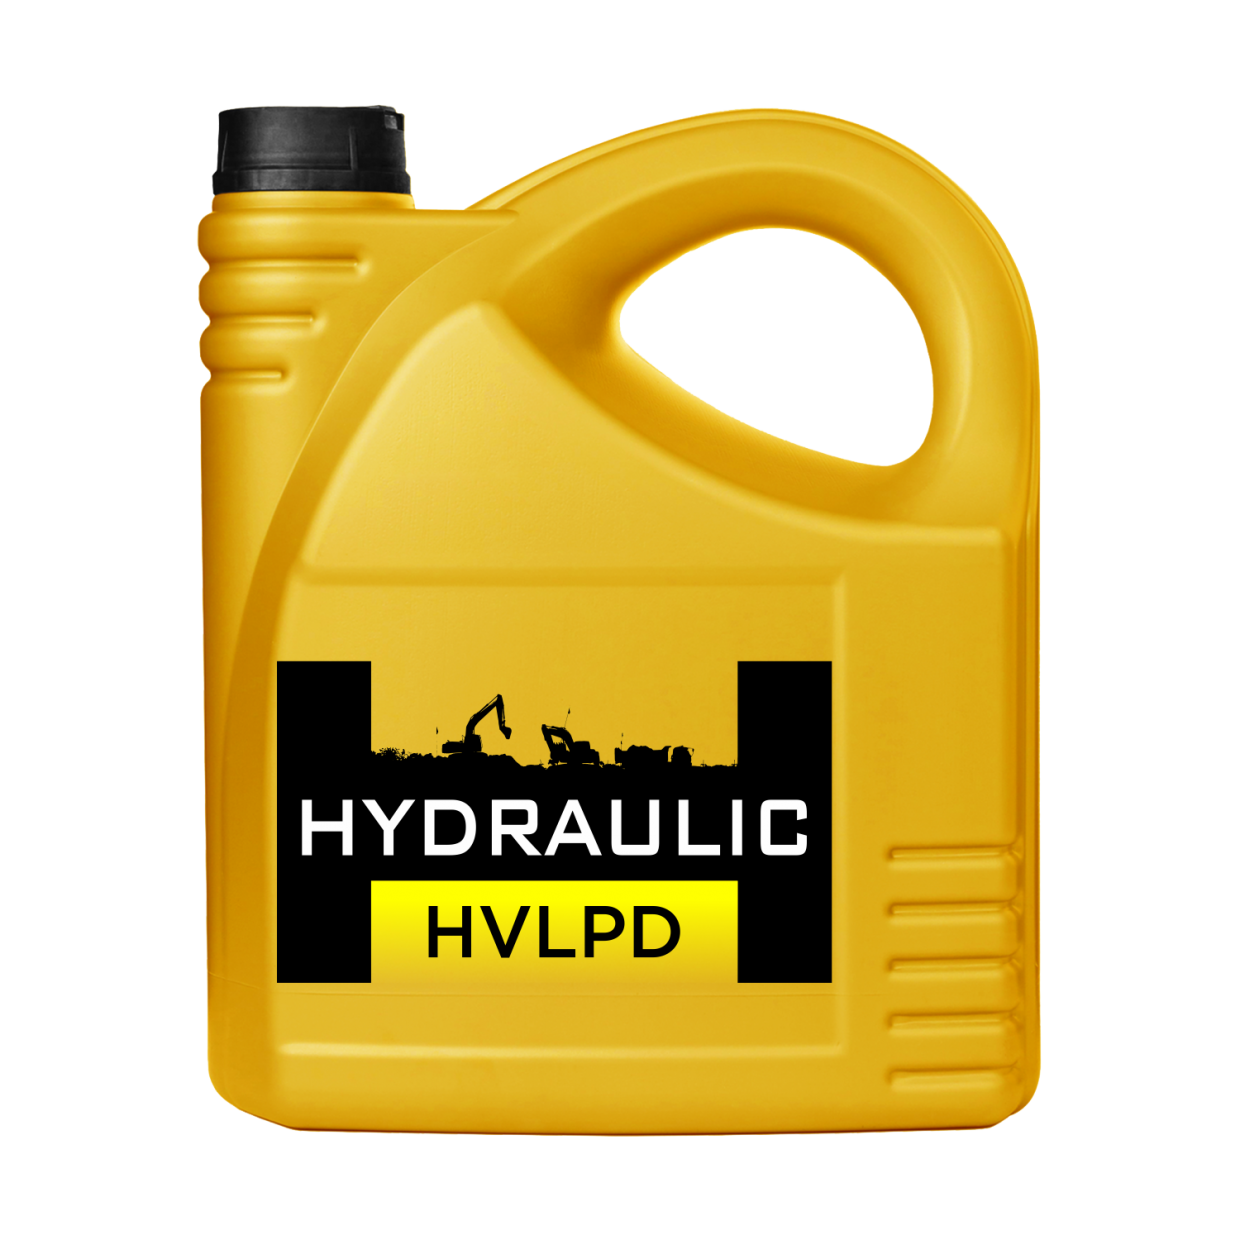 Масло гидравлическое 45. Масло Hydraulic 46. HLP 46 масло гидравлическое. Масло гидравлическое HVLP 46.